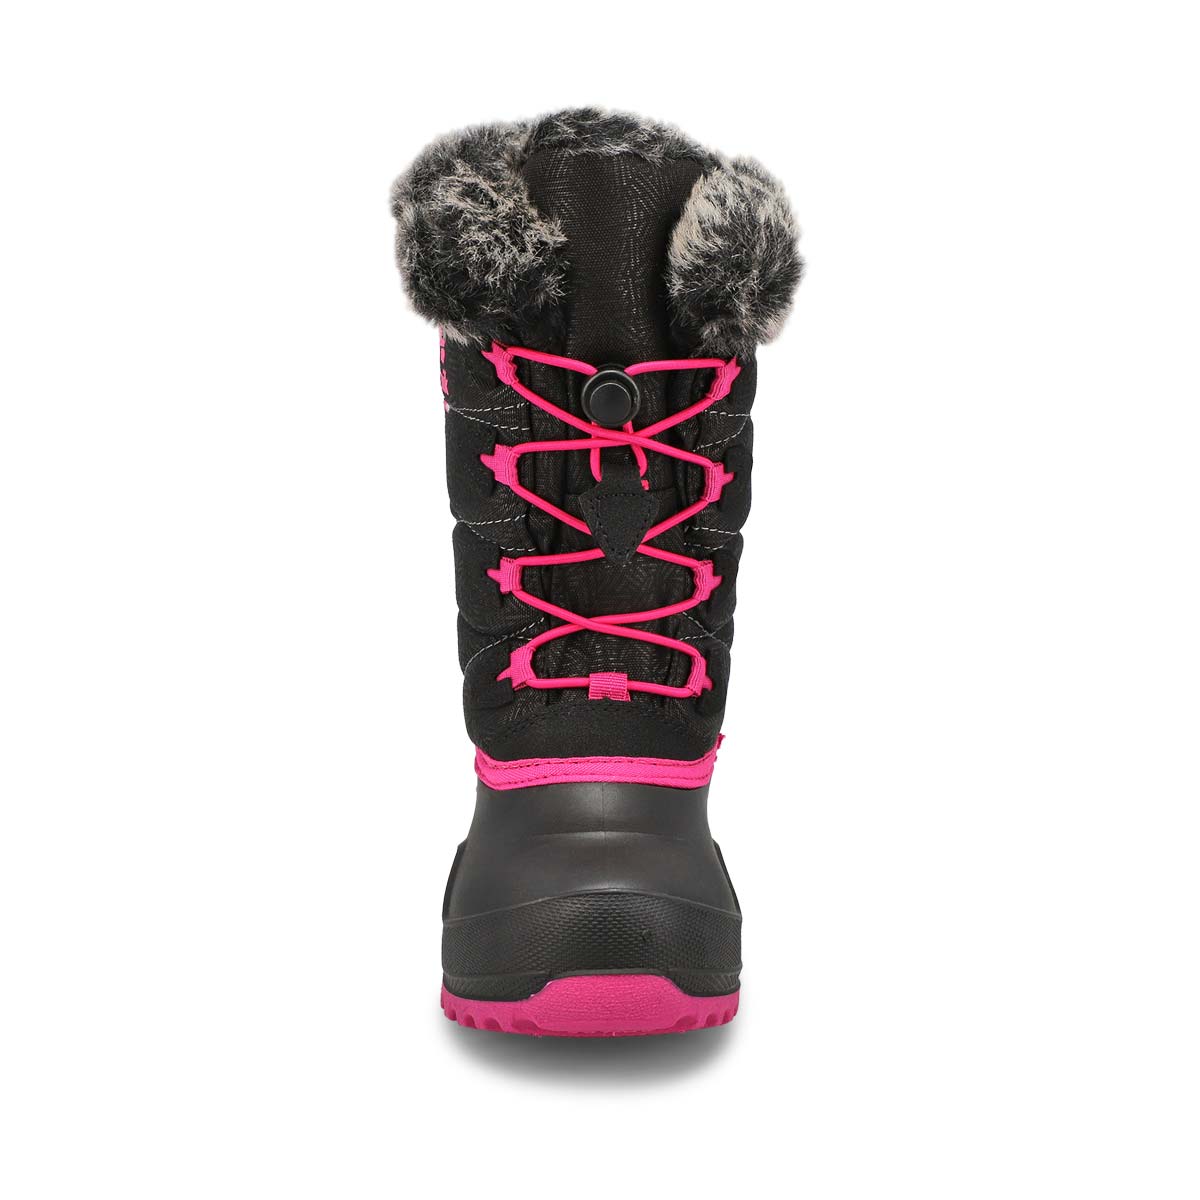 Girls' Snowgypsy 4 Waterproof Winter Boot - Black/Rose